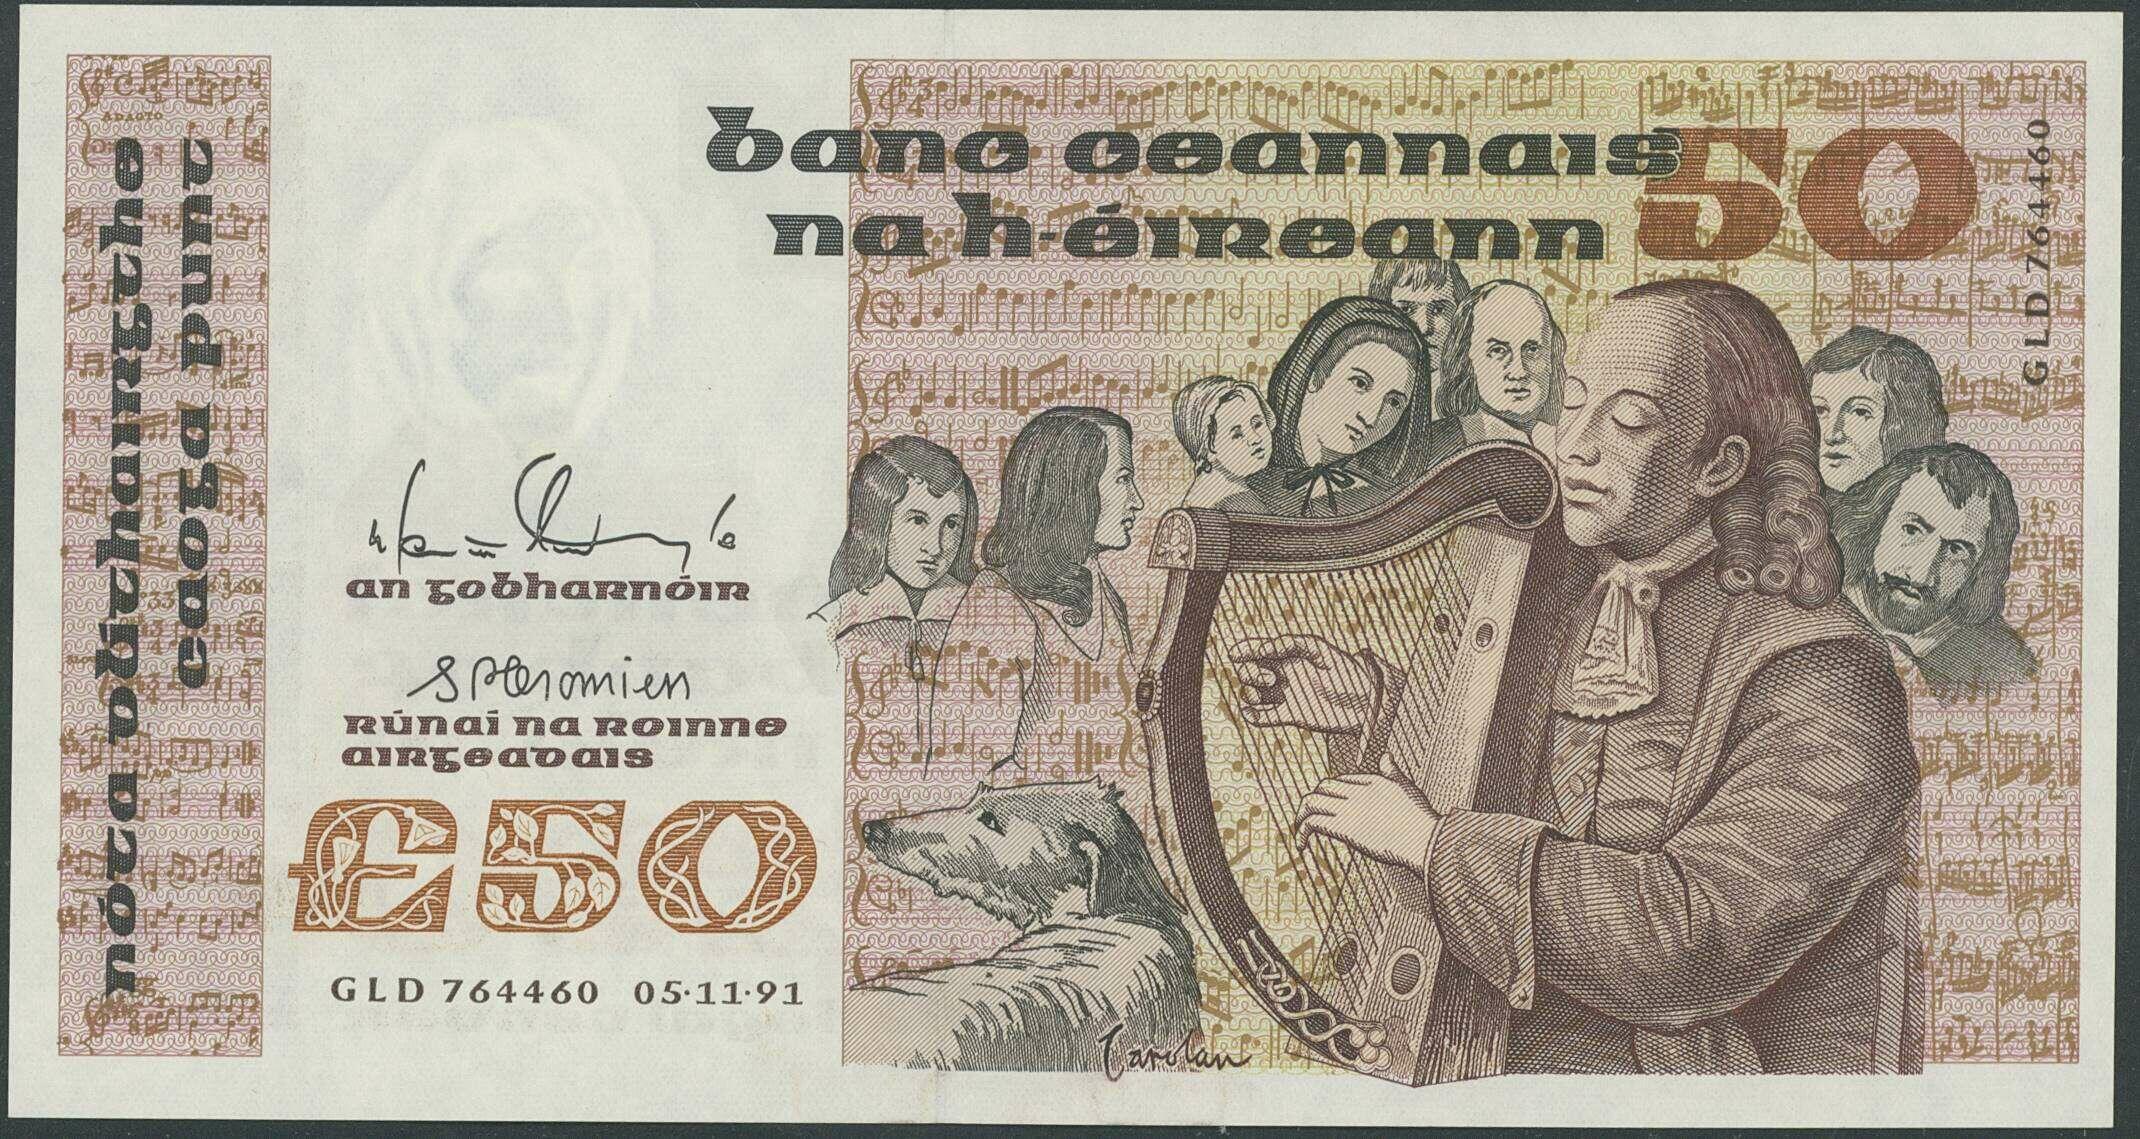 110.180: Billets - Irlande